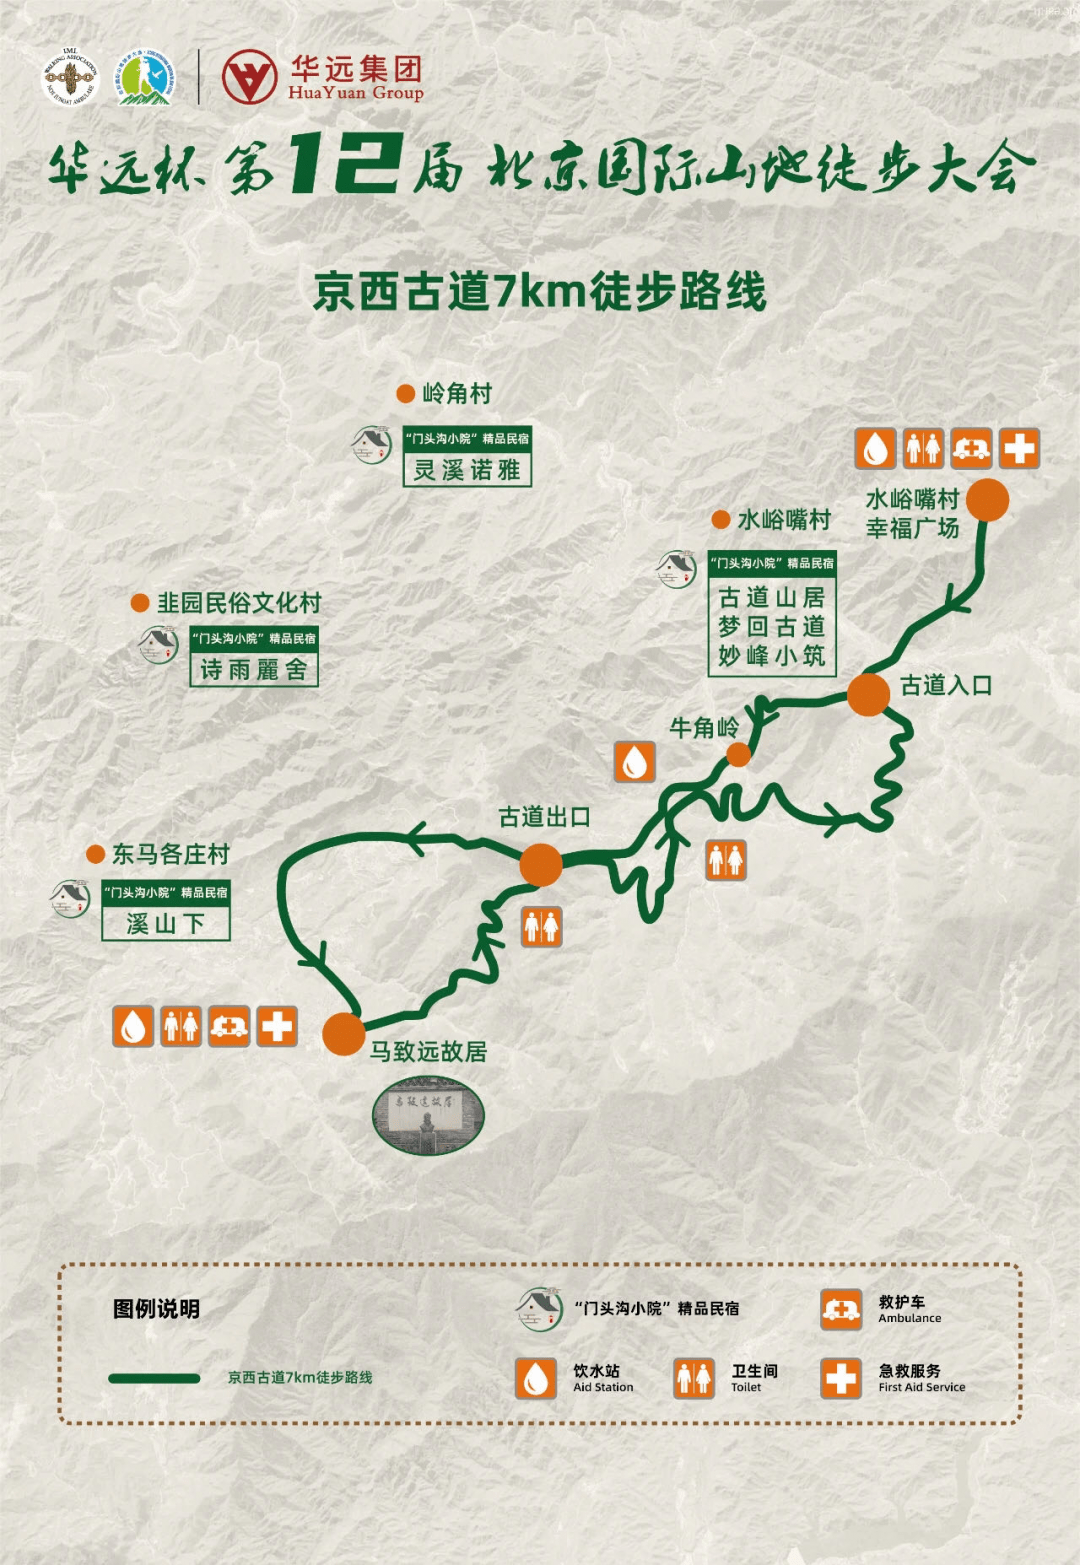 一,北京门头沟站 (1)京西古道7公里徒步路线 活动时间:5月15日 活动